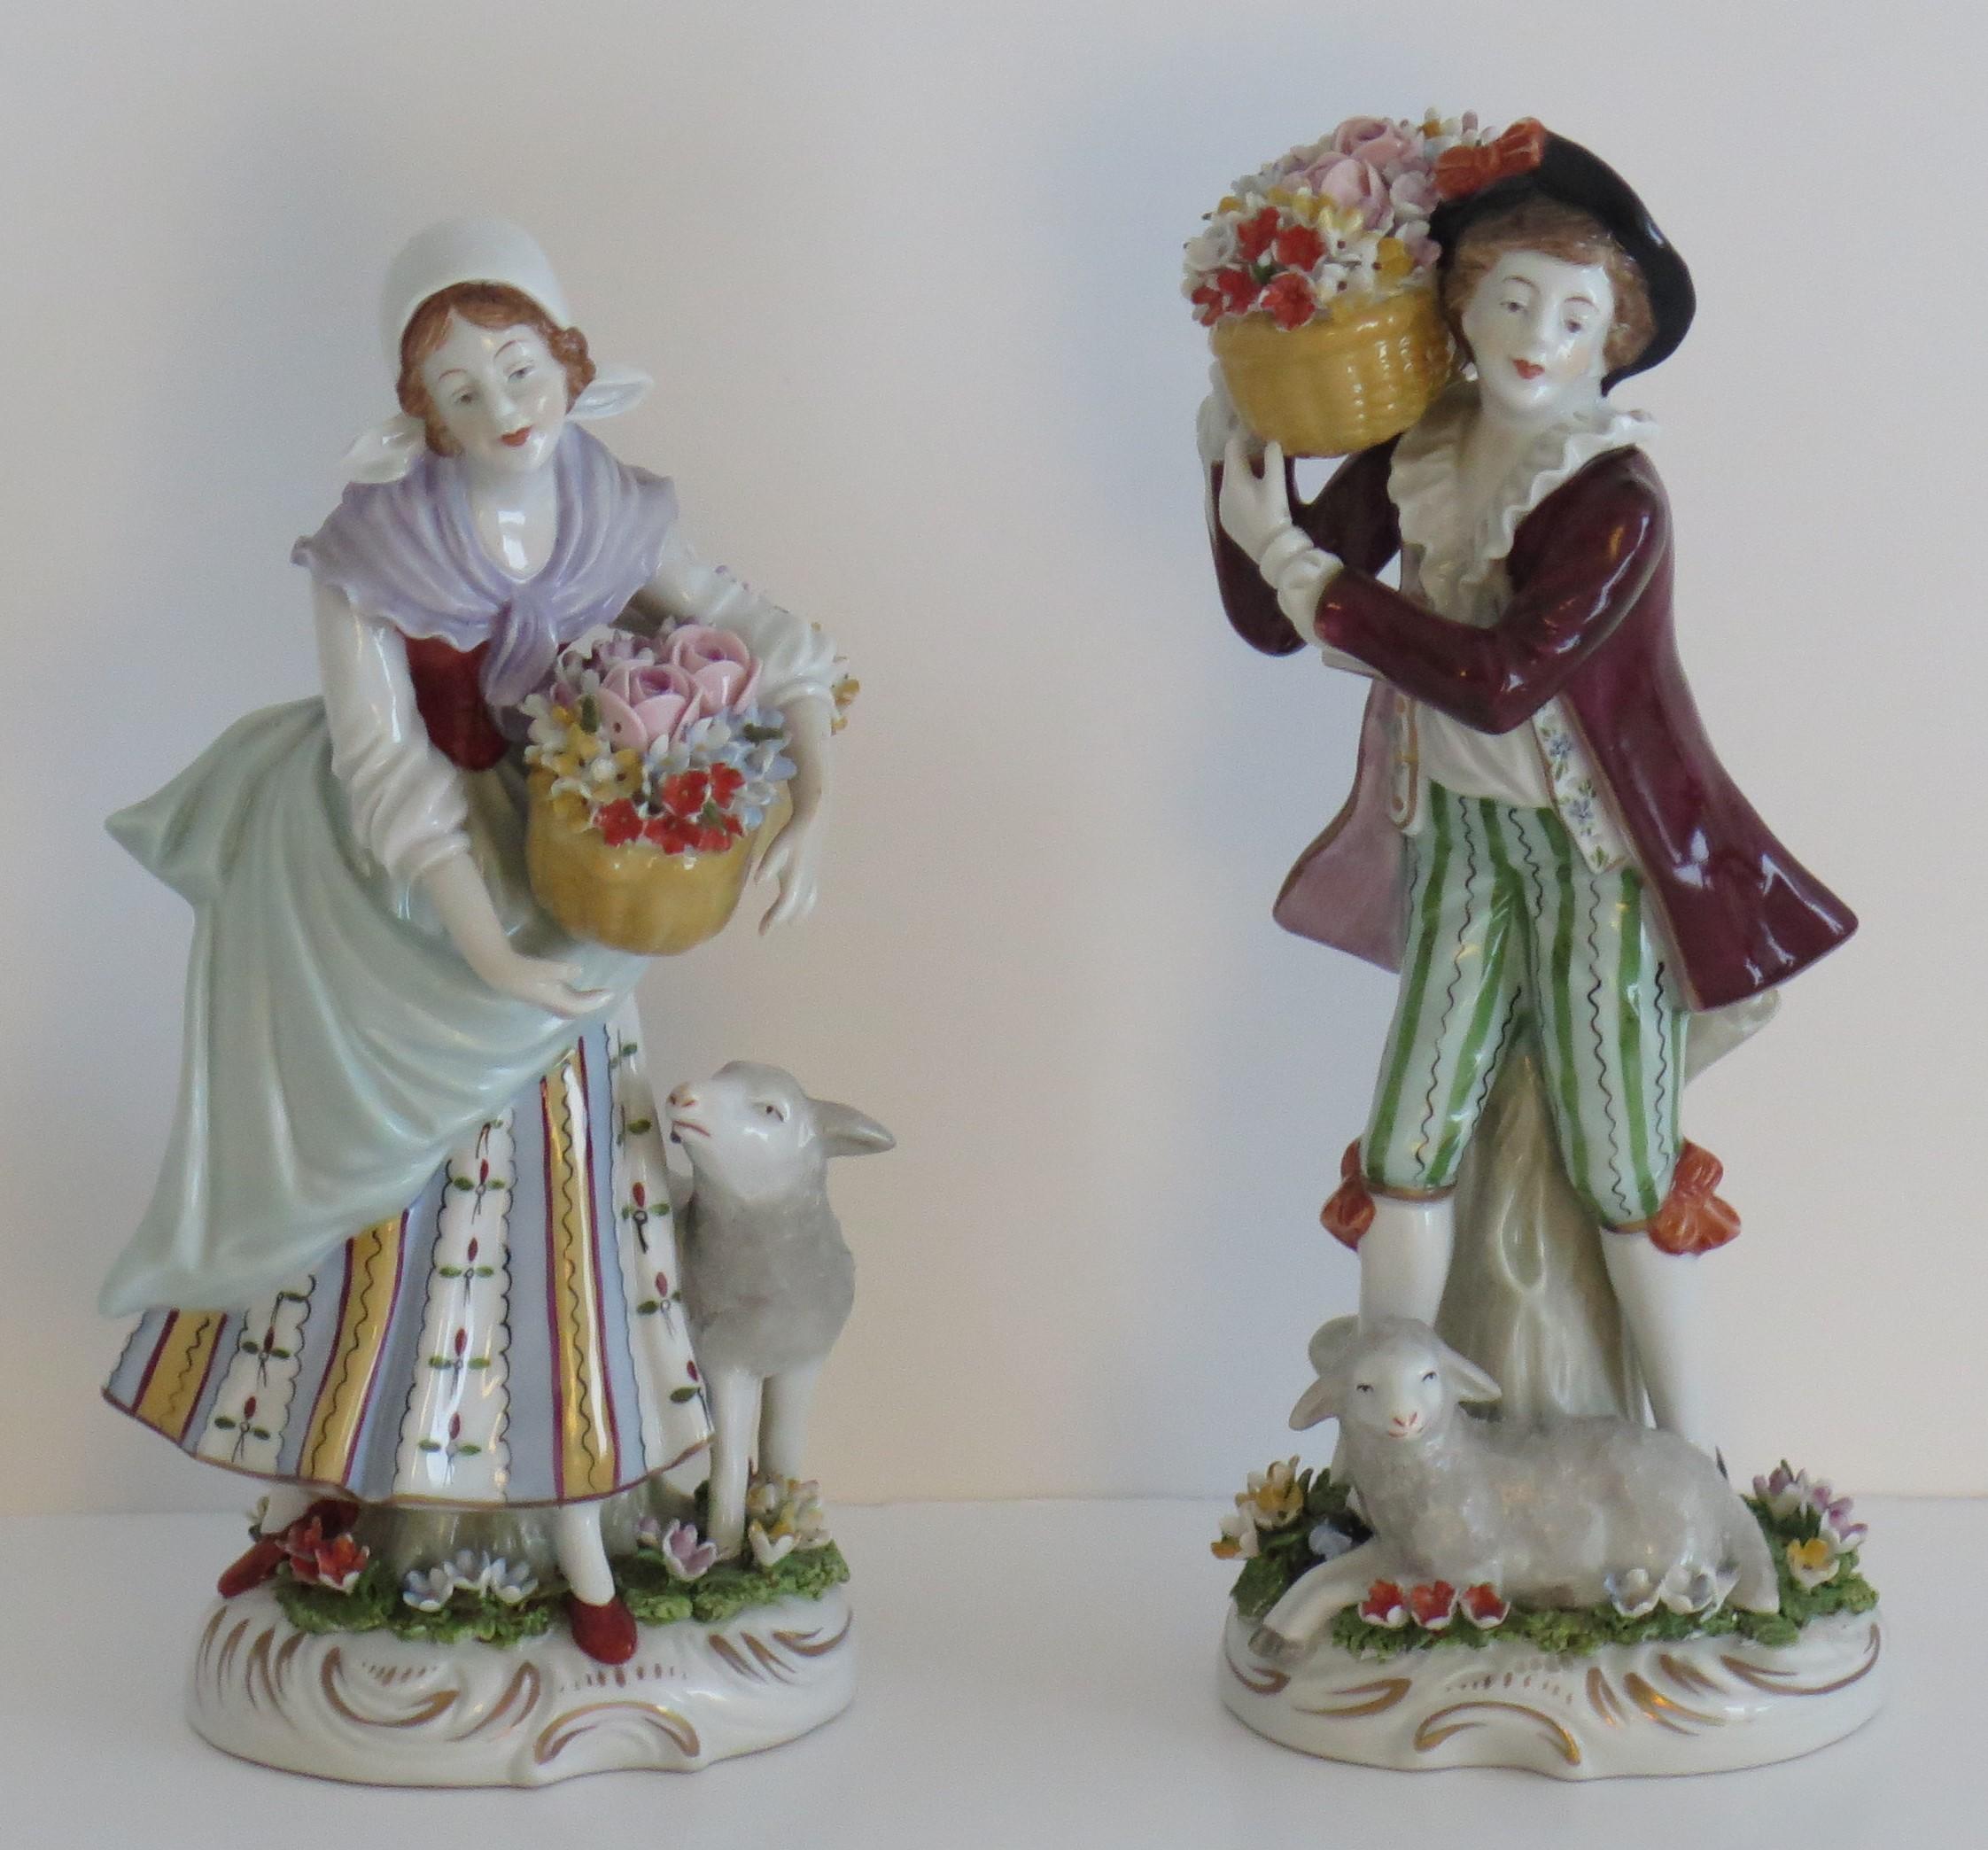 Il s'agit d'une magnifique paire de figurines en porcelaine fabriquées par Sitzendorf, en Allemagne, vers 1920.

Les figures sont finement modélisées et très bien détaillées. Ils représentent deux vendeurs de fleurs avec un jeune homme et une